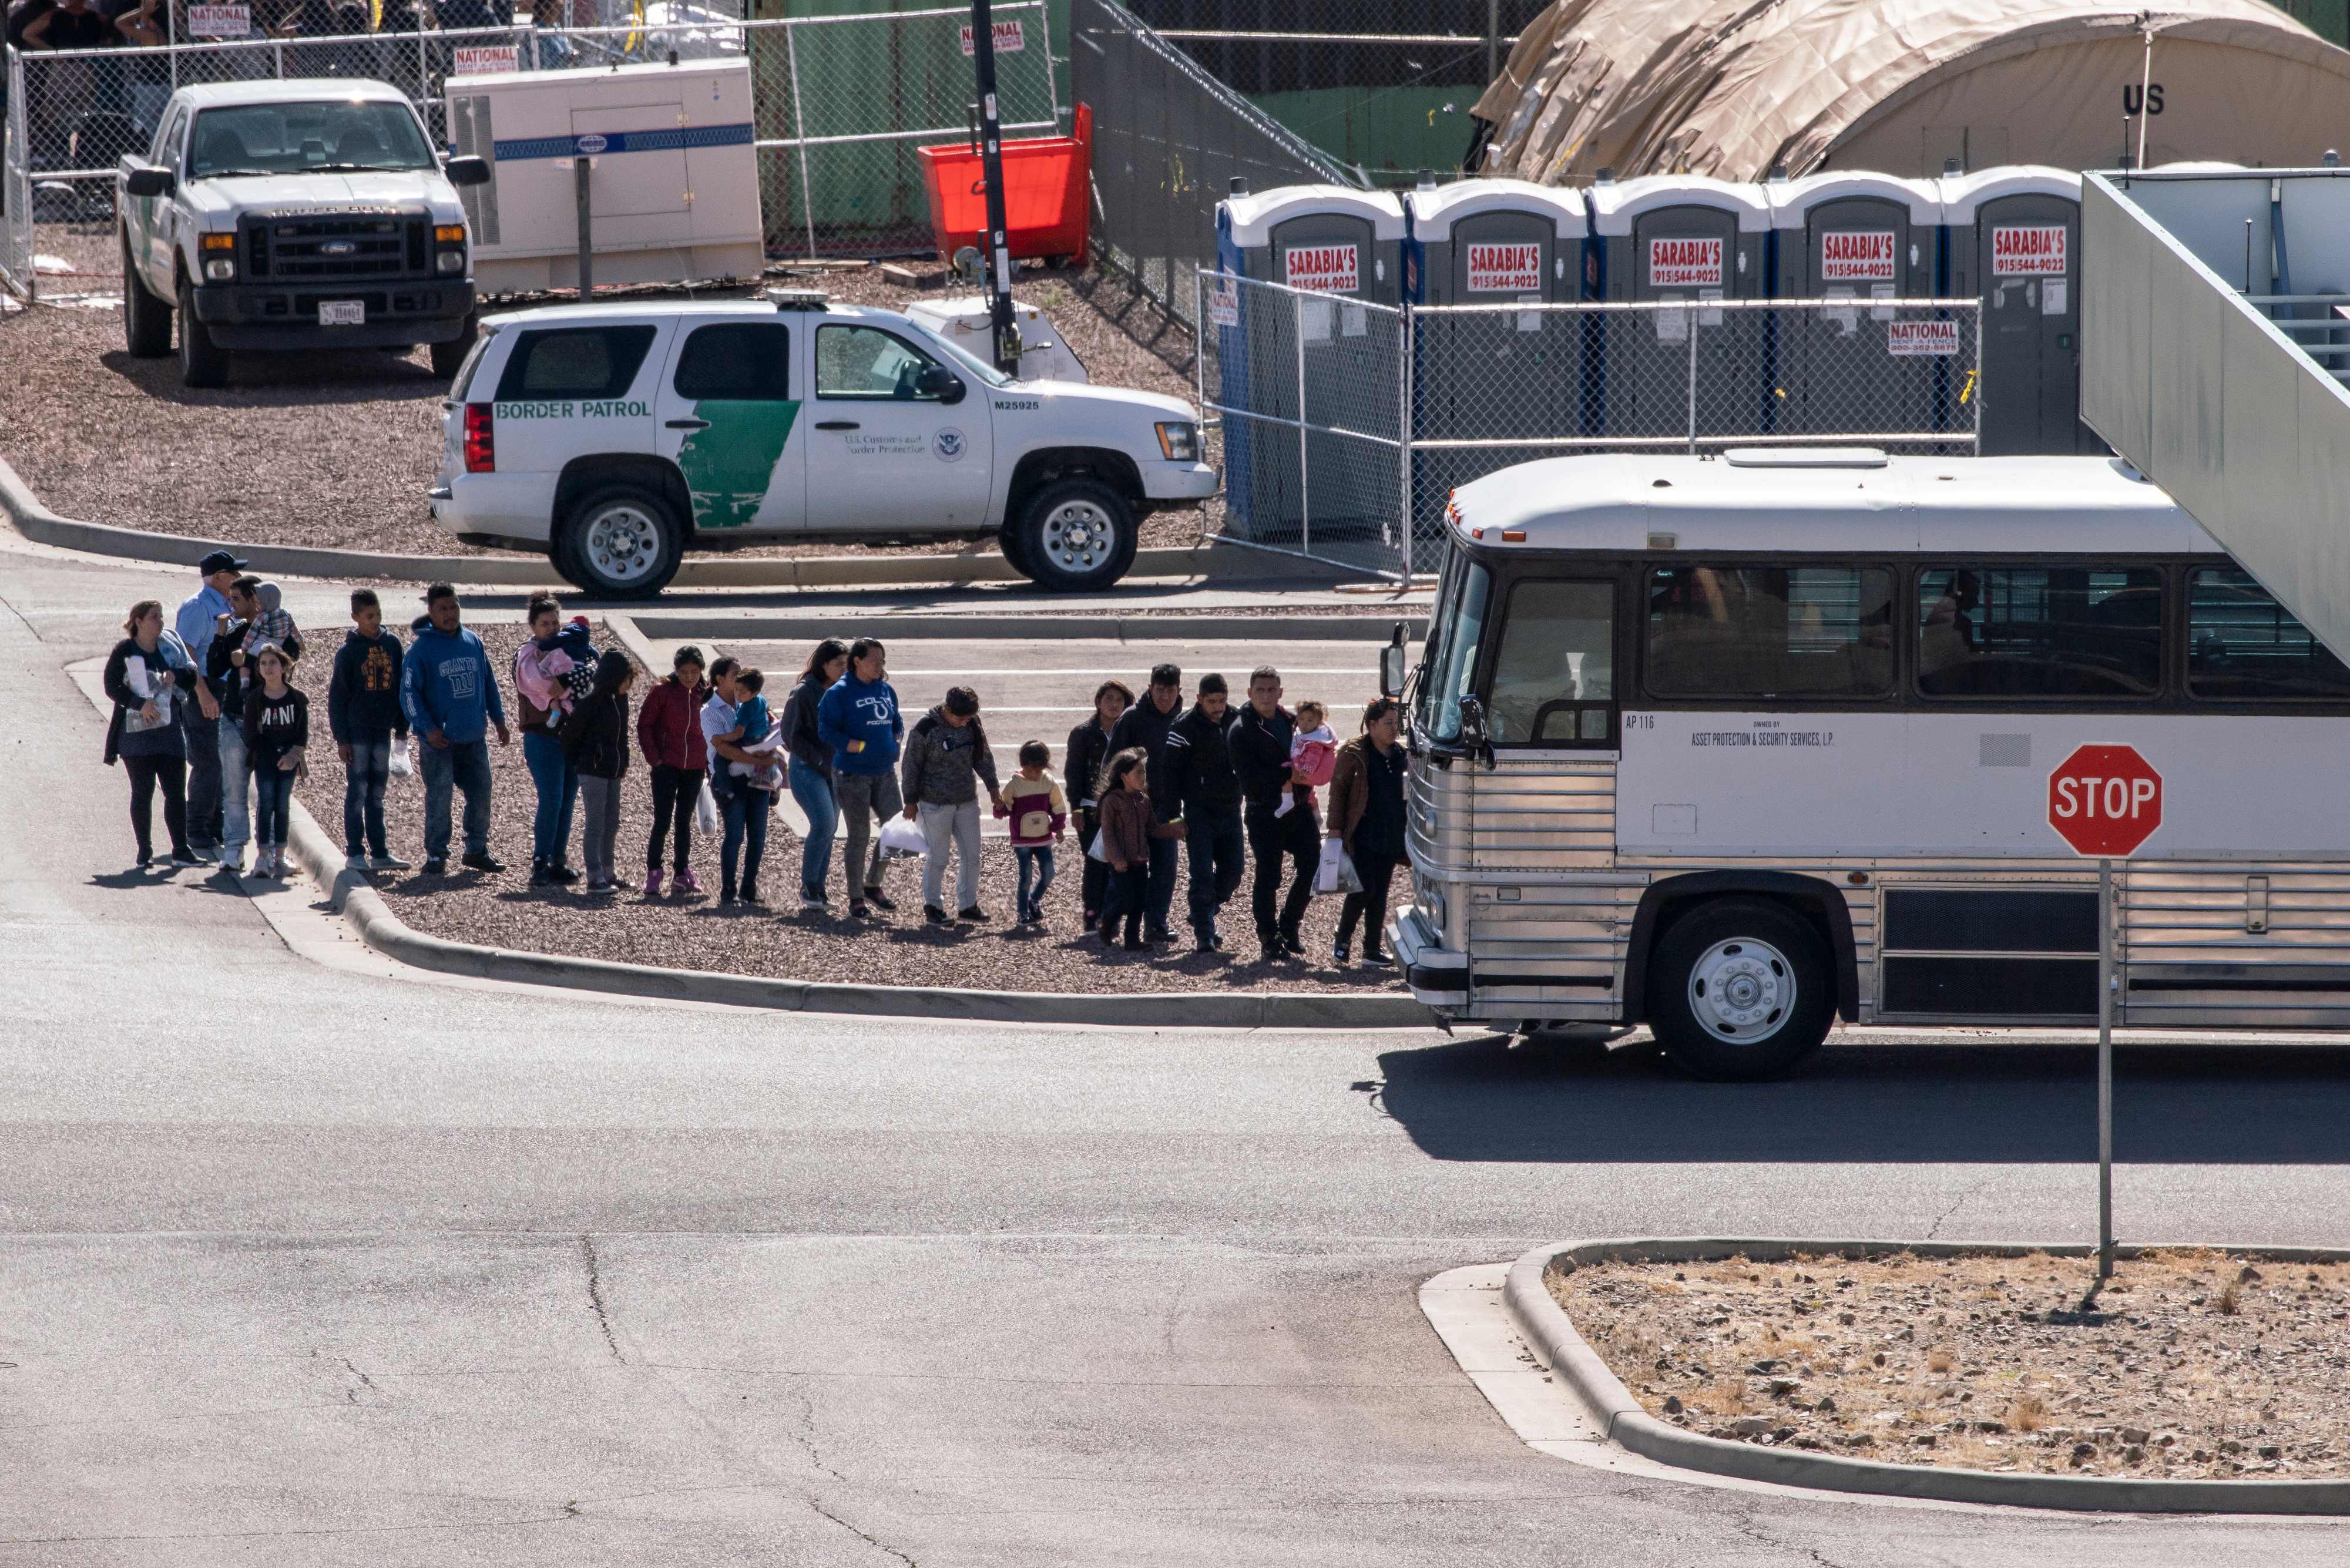 Migrantes detenidos en un centro de El Paso, Texas. (Foto Prensa Libre: Hemeroteca PL)